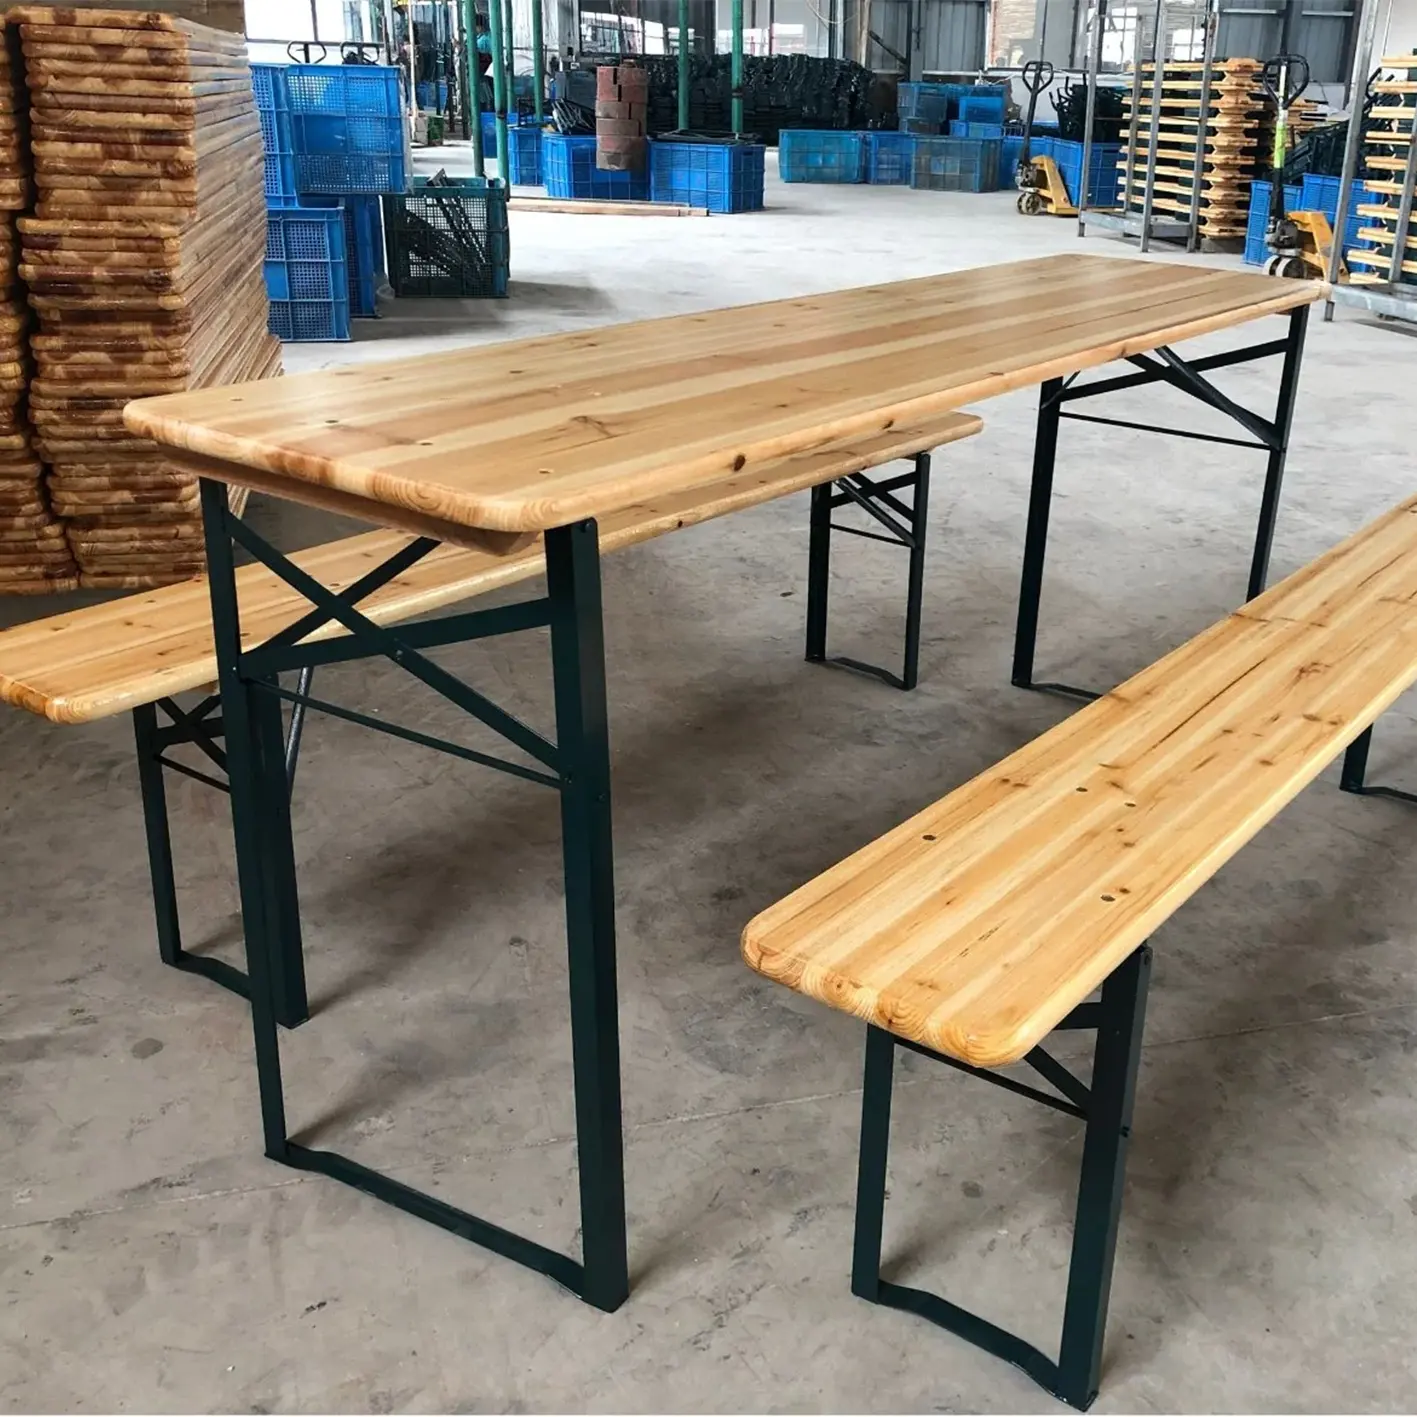 مجموعة طاولة بيرة خشبية قابلة للطي من الخشب الصلب للتركيب في الفناء وفي الهواء الطلق لممارسة الترفيه في أماكن شاقة العمل من المصنع مع مقاعد